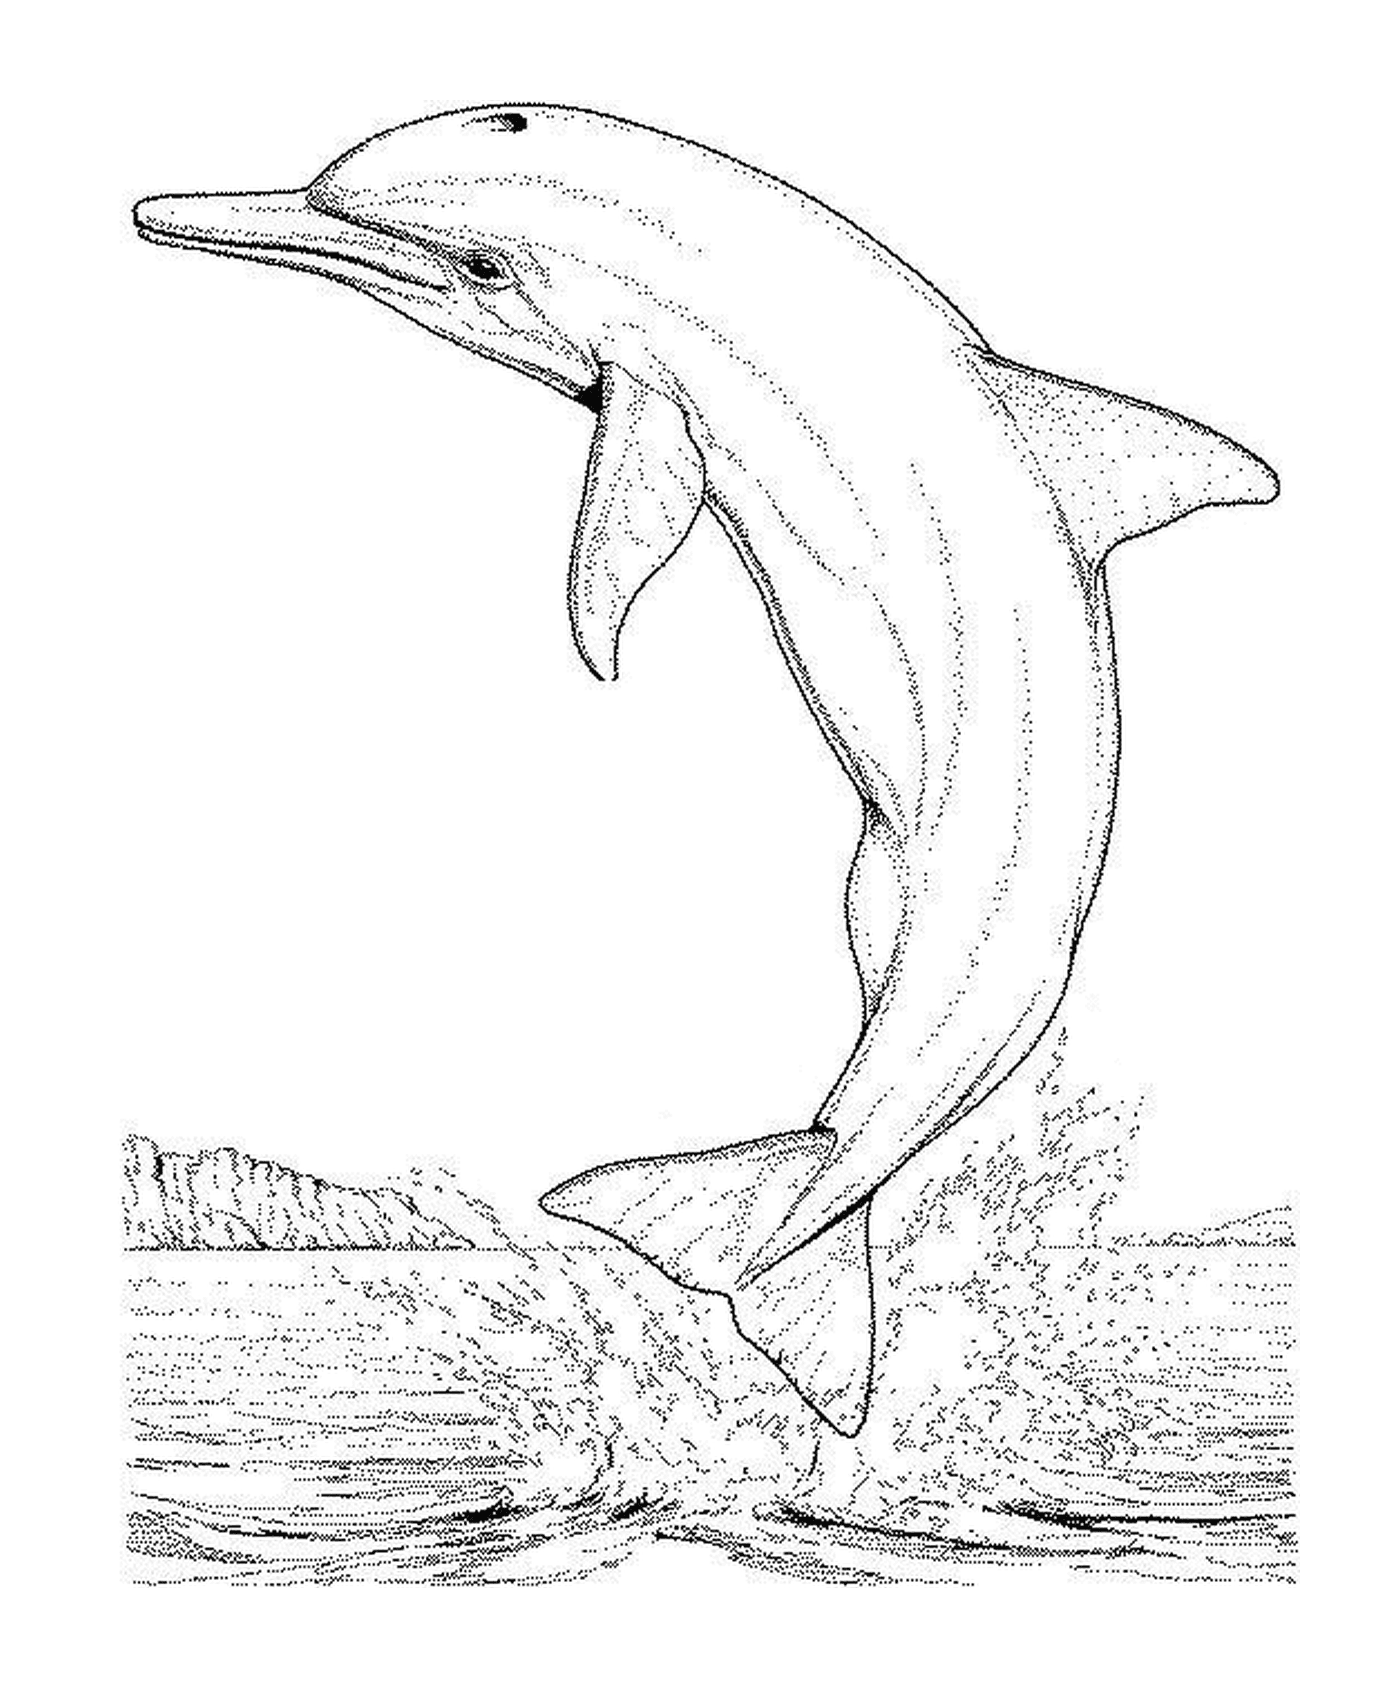   Un dauphin sautant hors de l'eau 